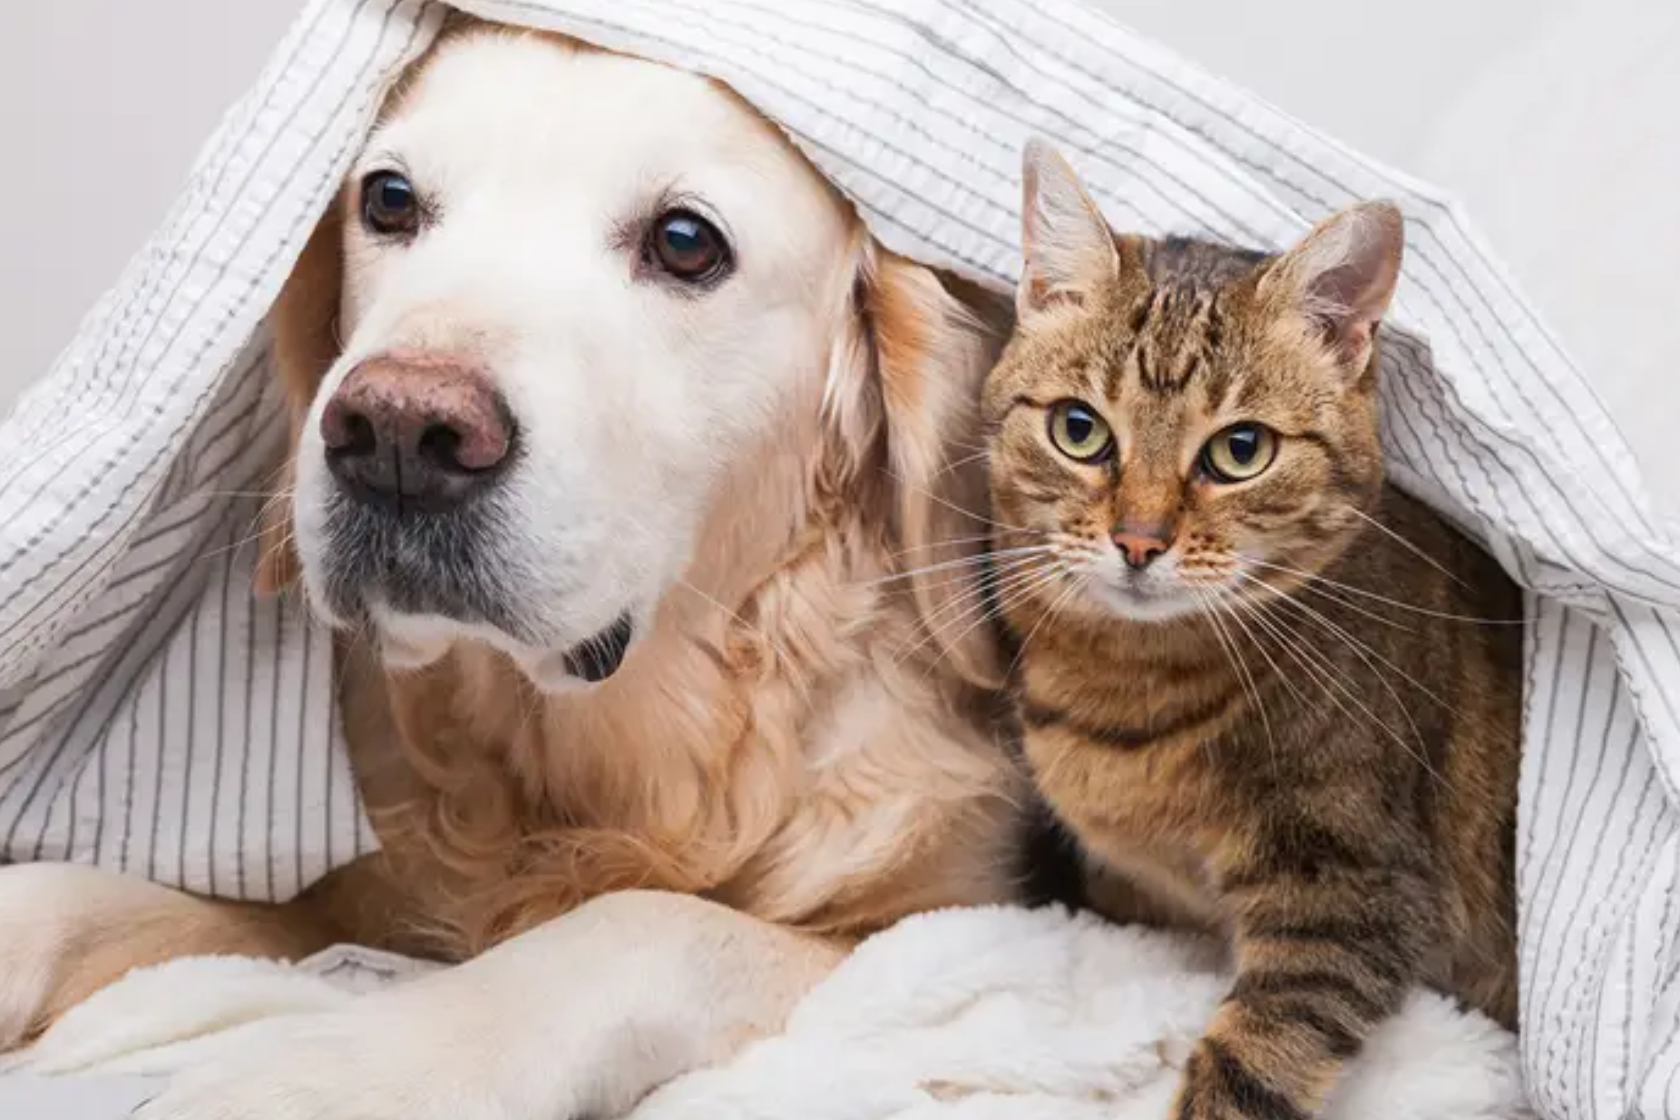 Dog and cat sat together under a blanket